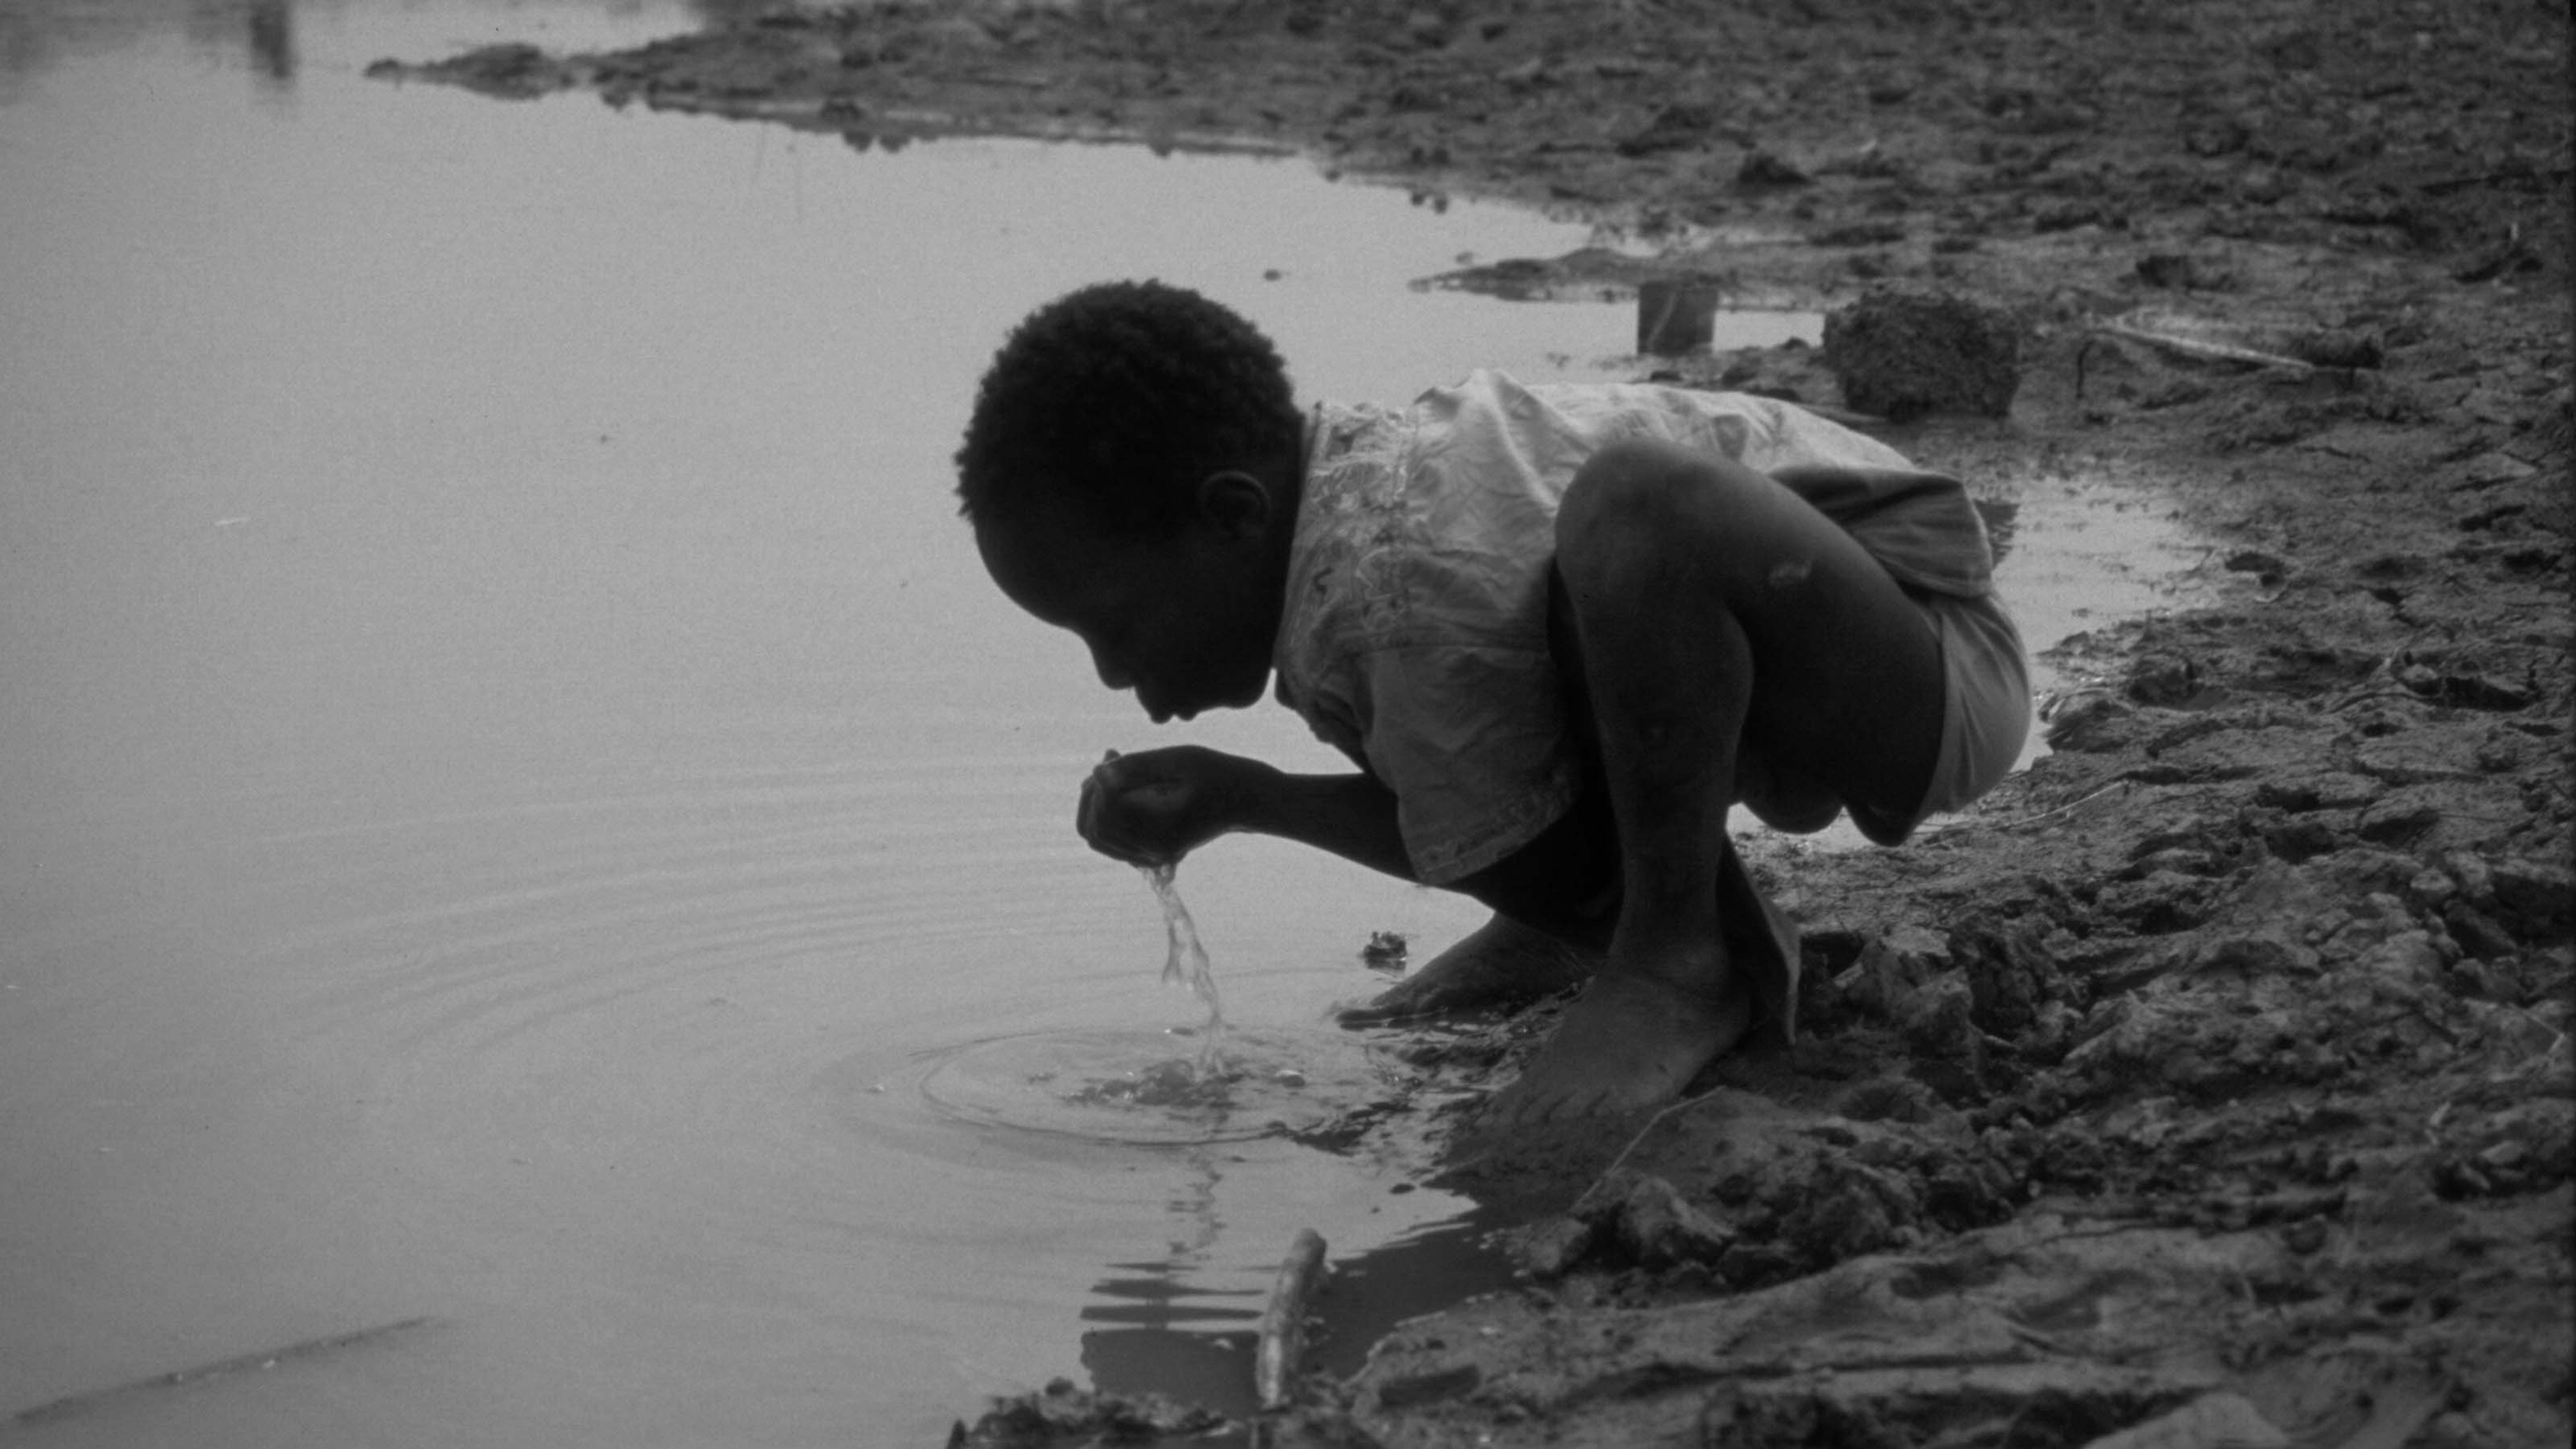 1984, carestia nel Sahel e nel Corno d'Africa: un ragazzo beve da uno stagno contaminato, unica fonte d'acqua disponibile nel villaggio di Zitenga, Burkina Faso.